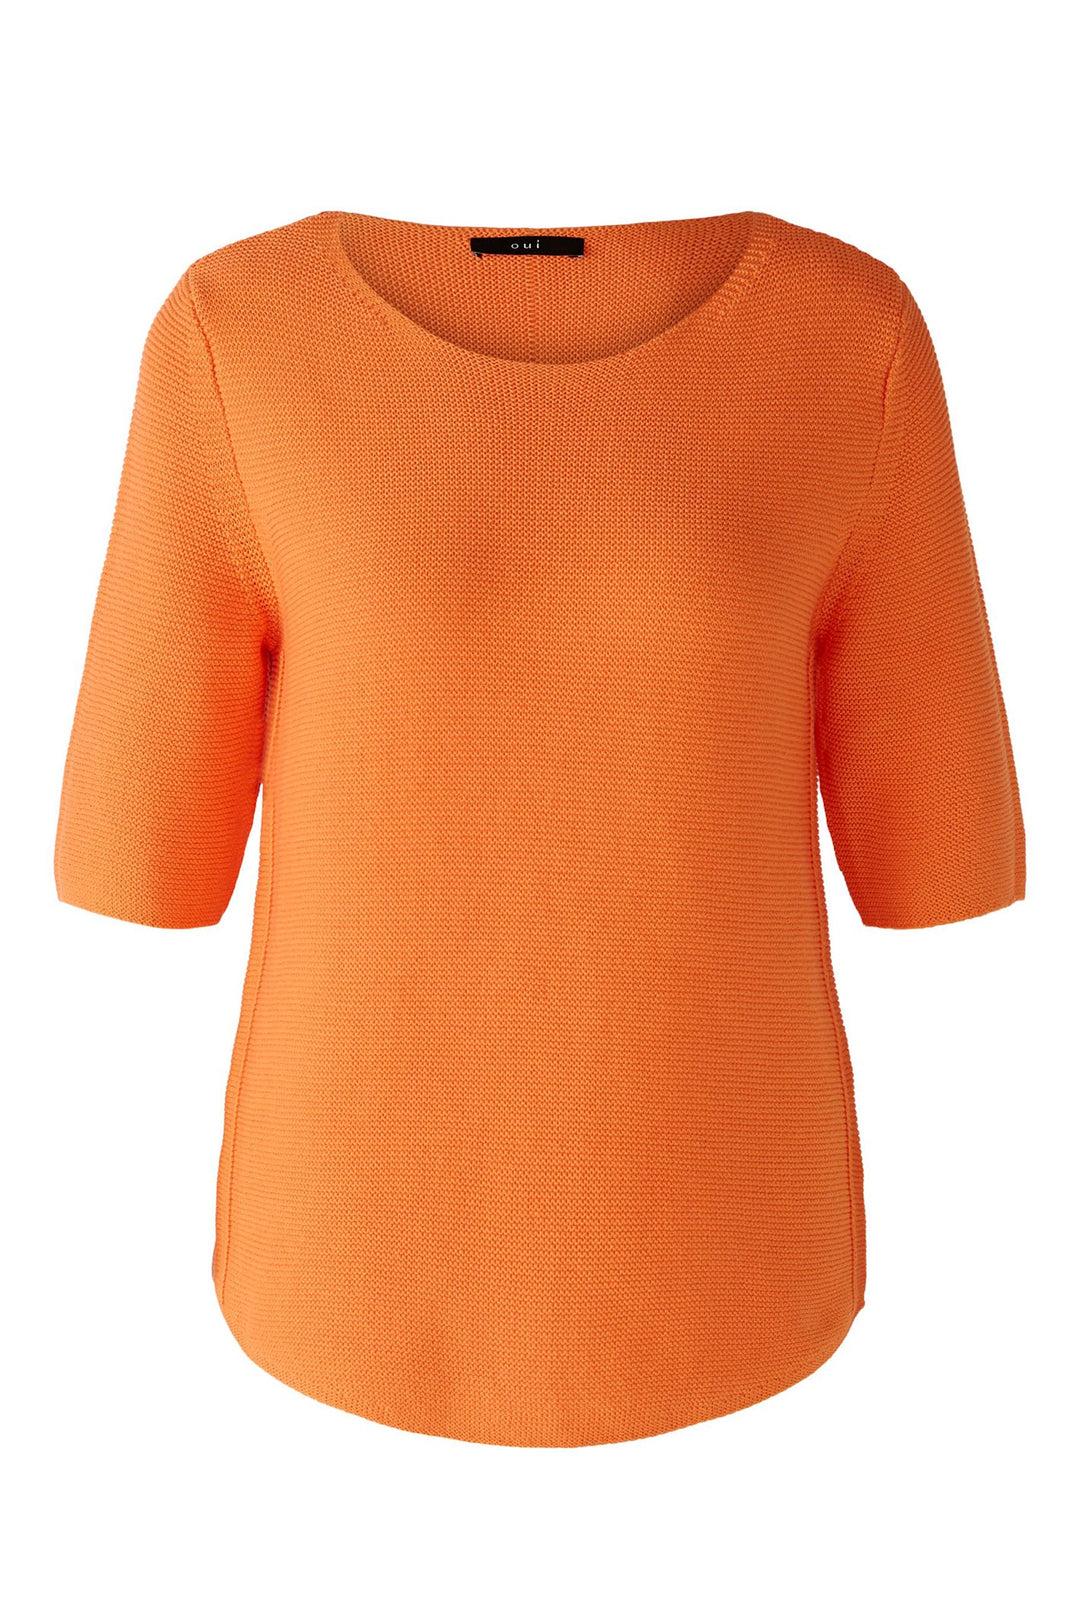 Oui 87489 Vermillion Orange Short Sleeve Round Neck Jumper - Dotique